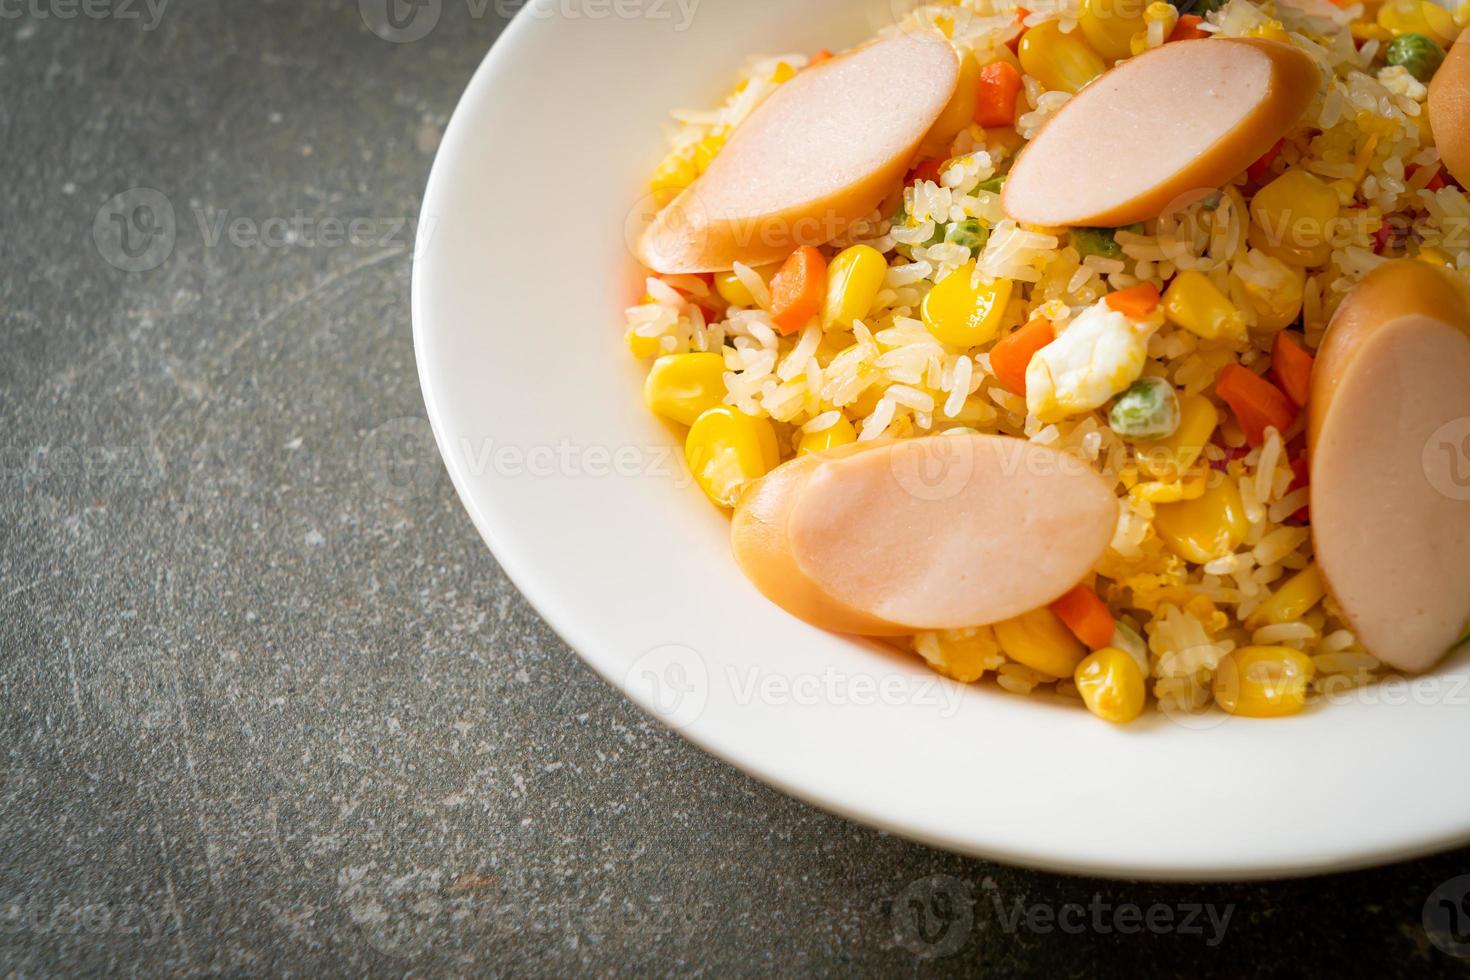 arroz frito com linguiça e vegetais mistos foto